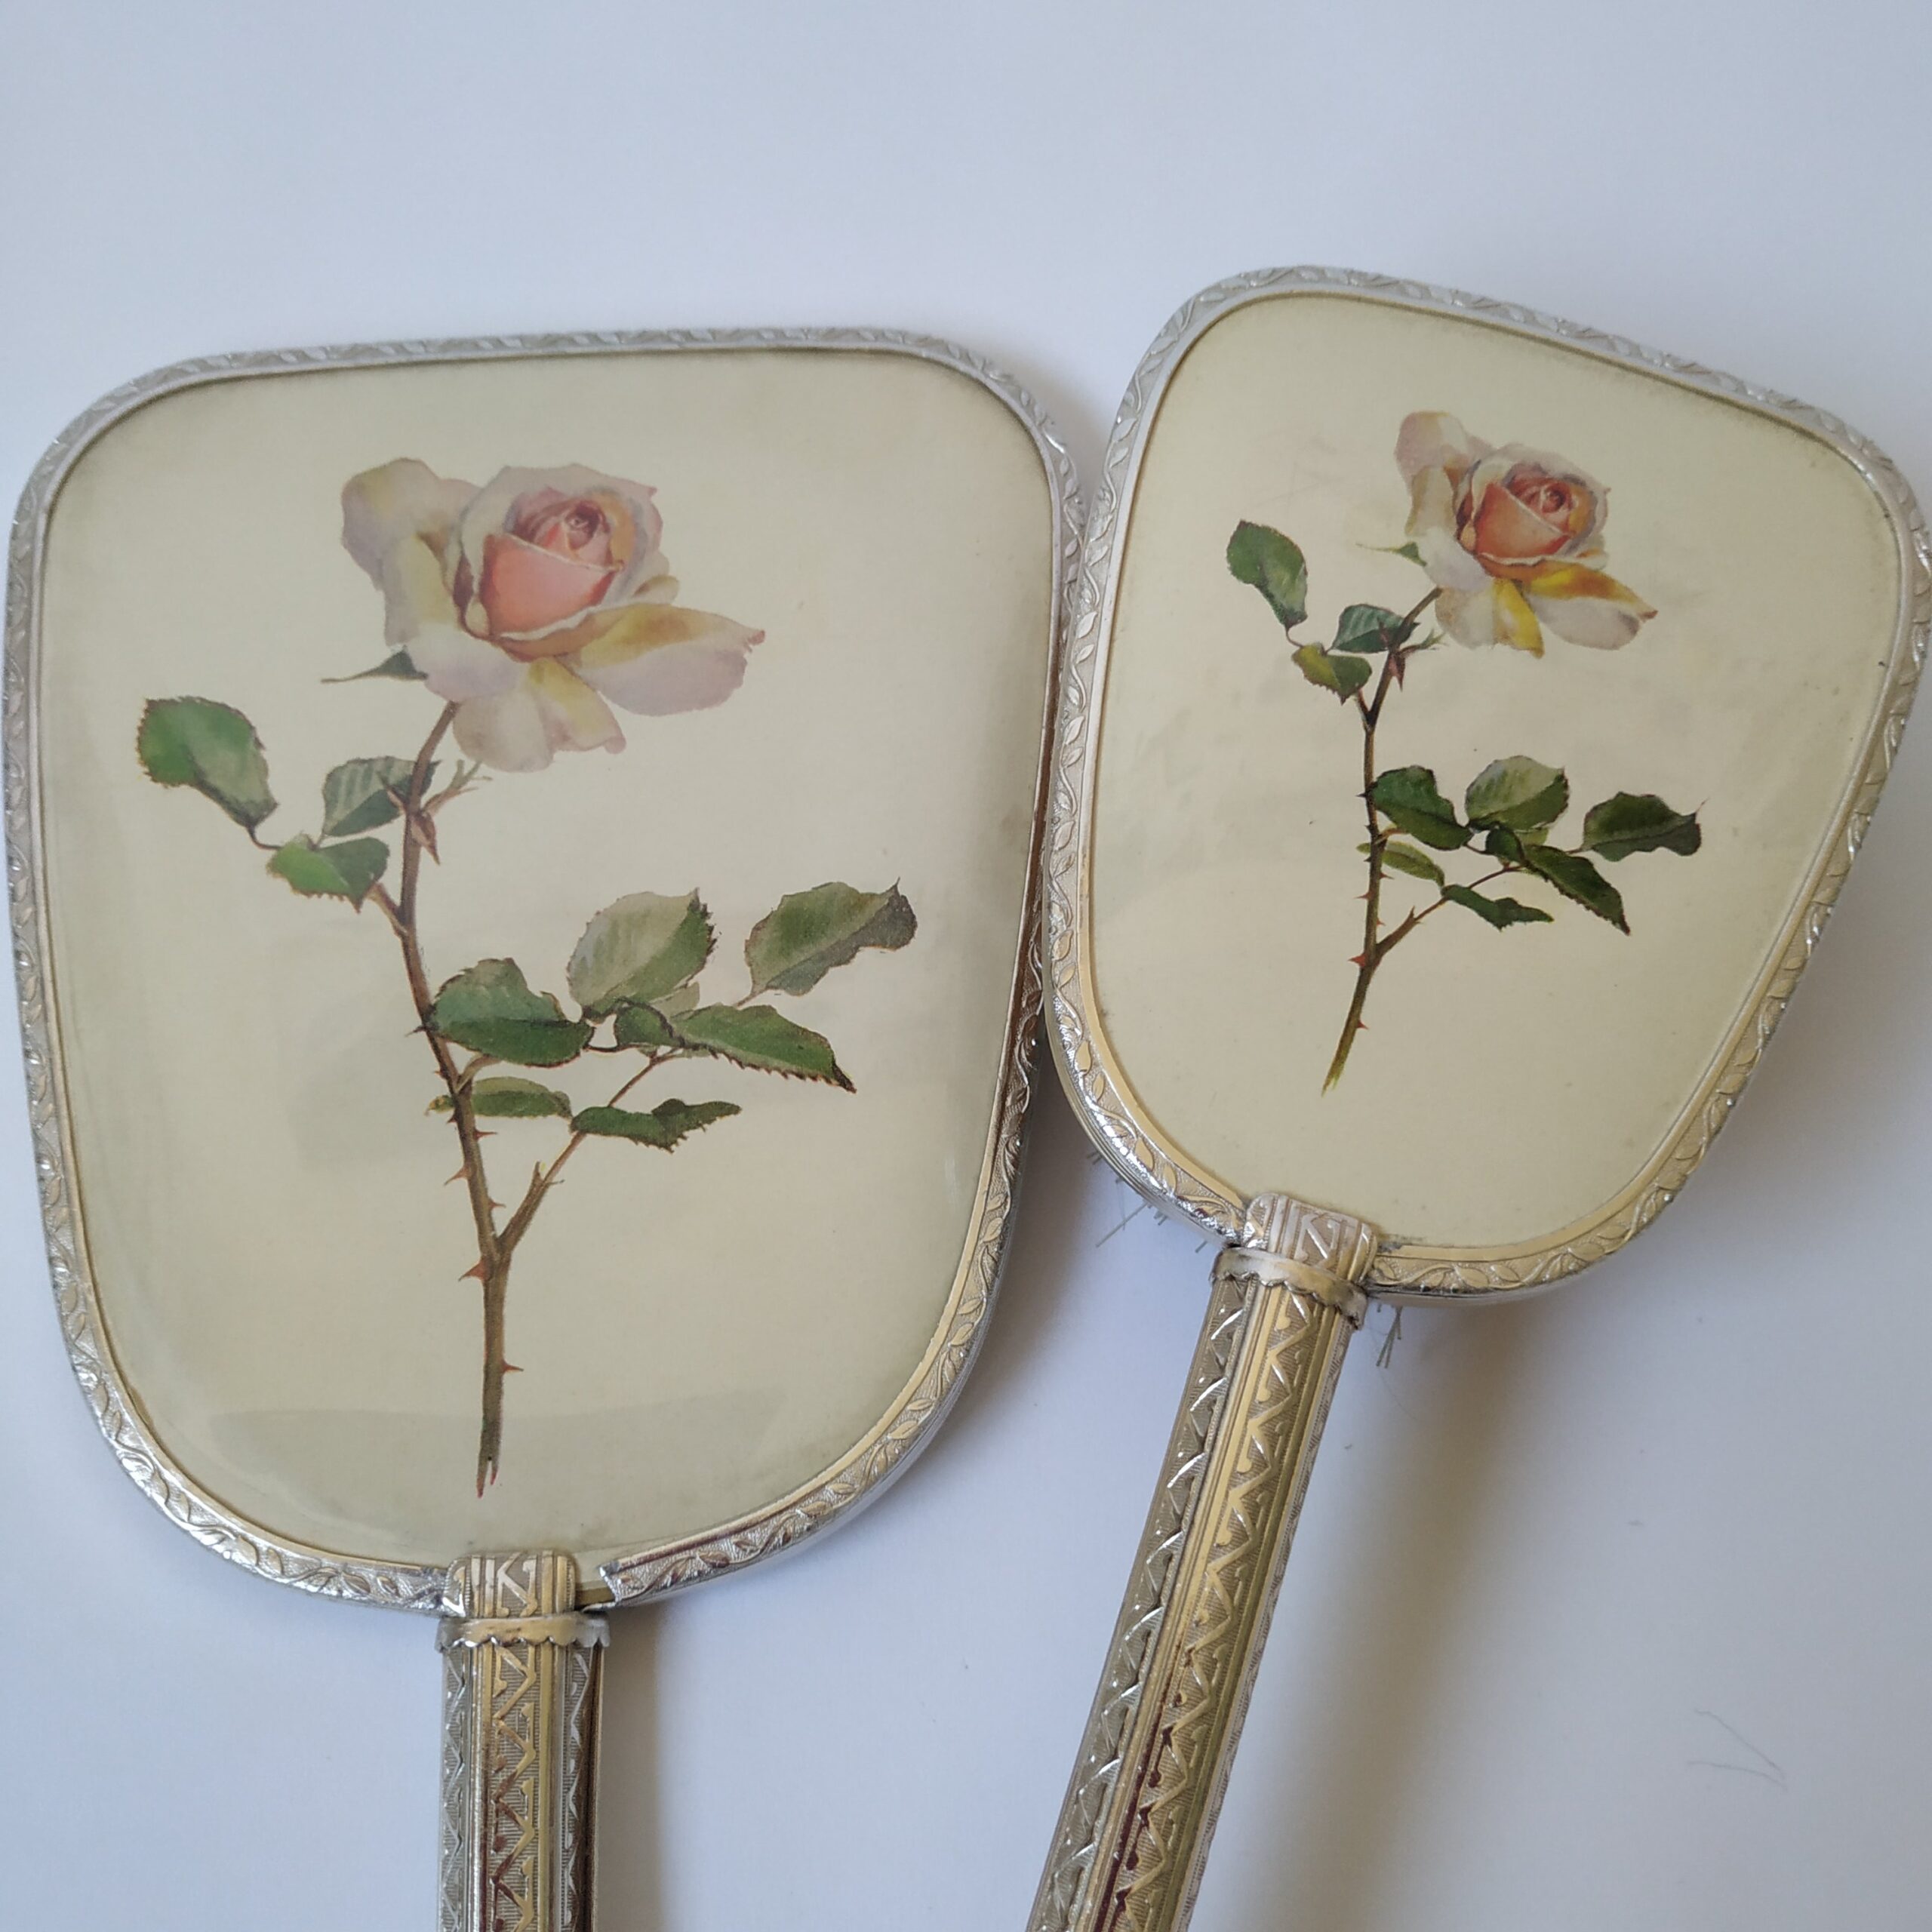 Handspiegel met borstel – lengte 30 en 23 cm – afbeelding roos (2)